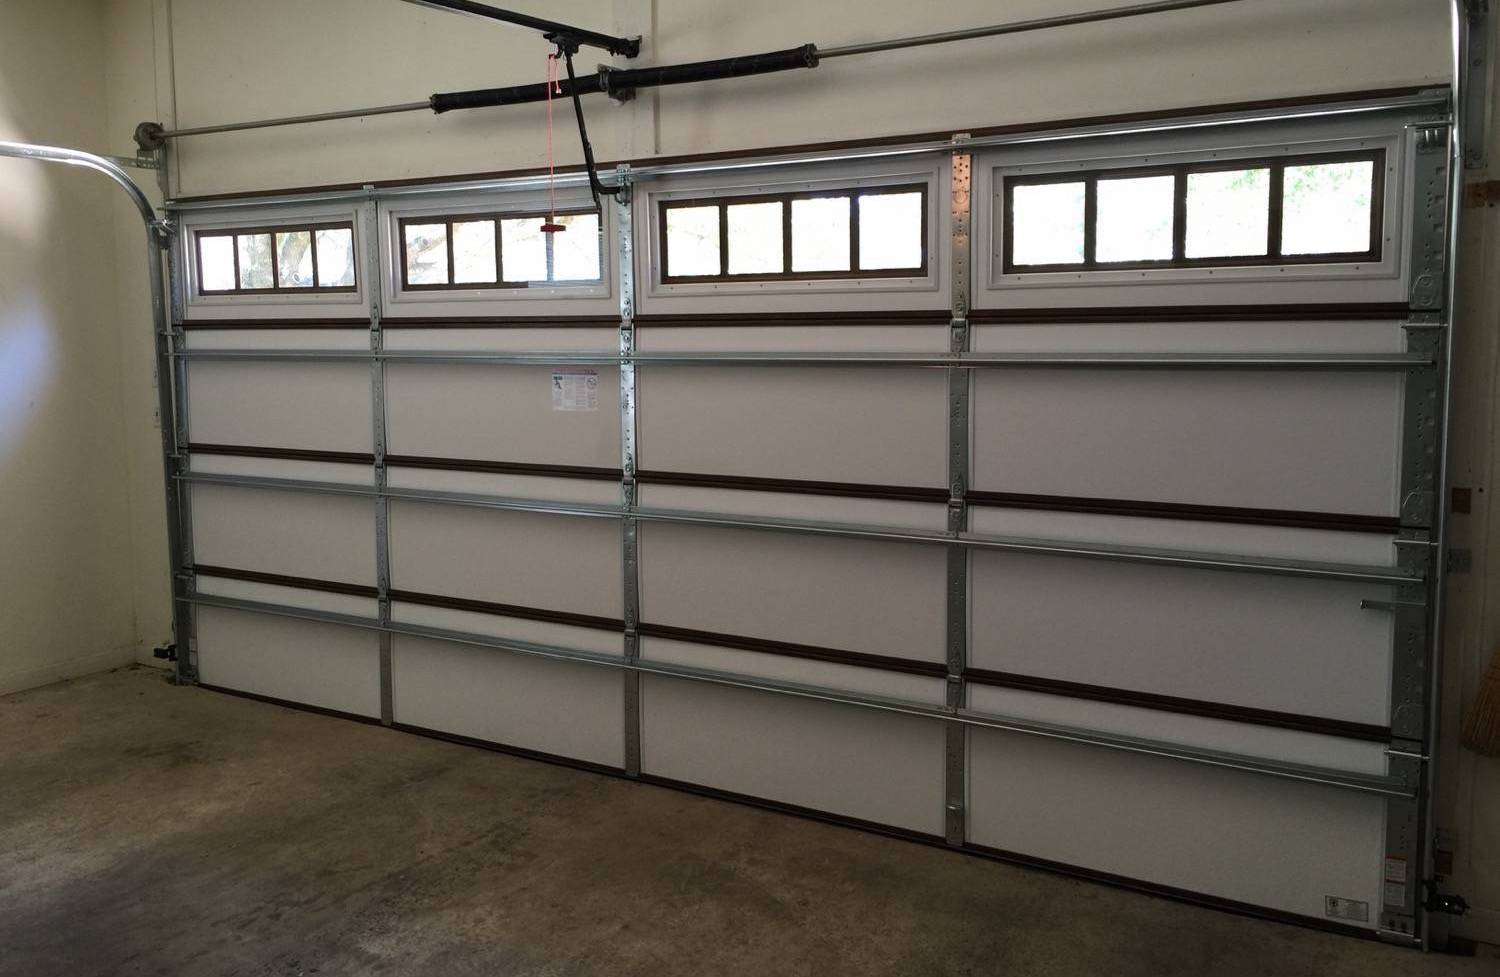 Vinyl back insulated garage door with full reinforcement struts installed.